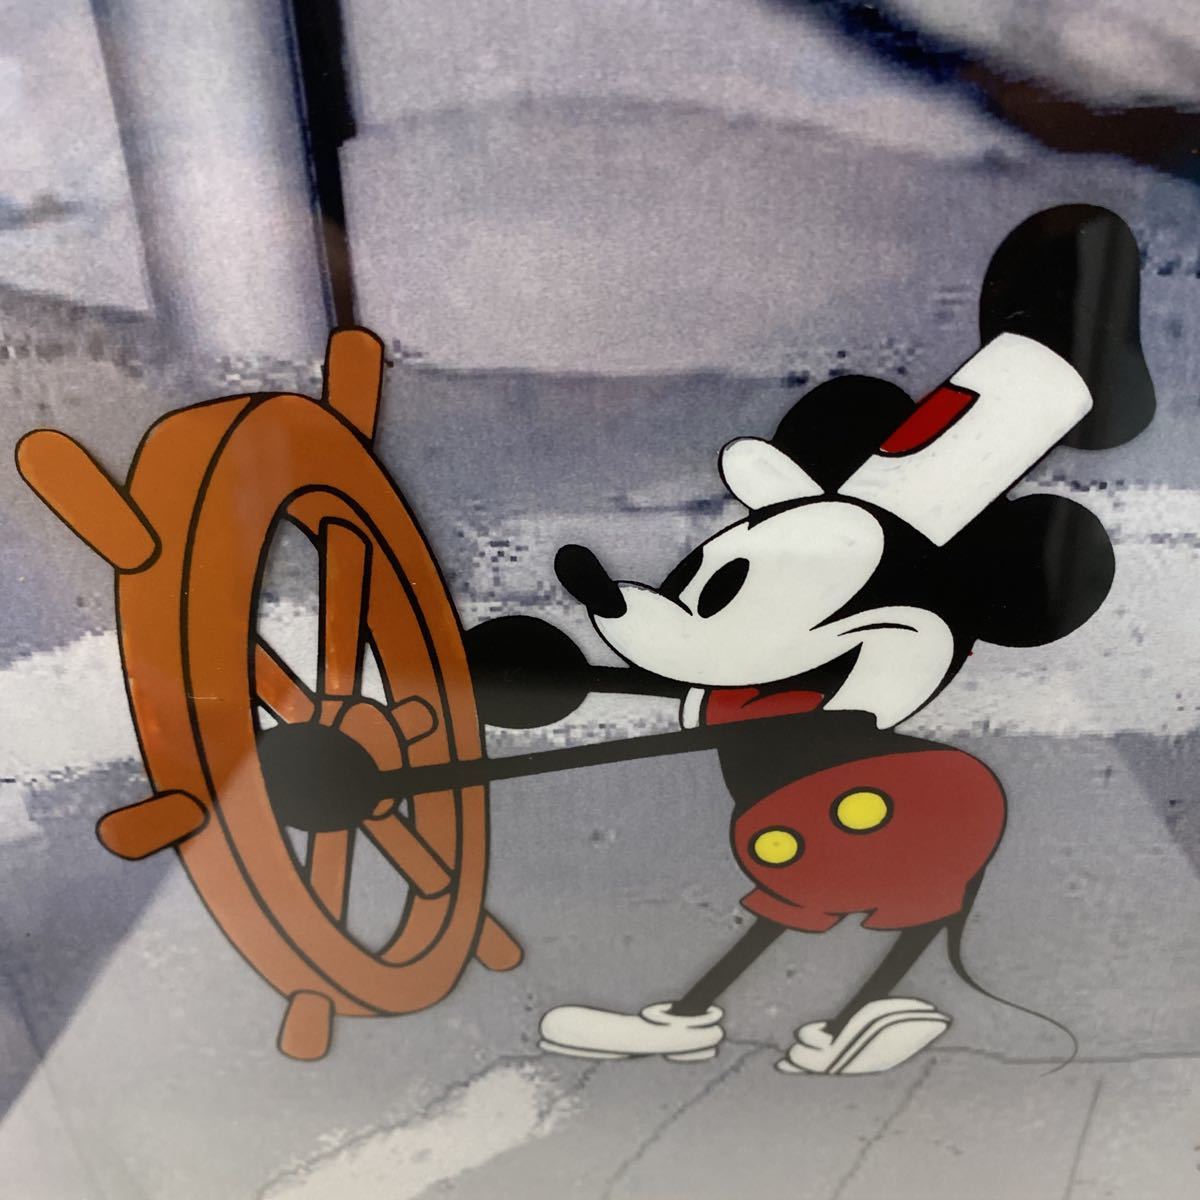 M61) DiSNEY 『蒸気船ウィリー』 ミッキーマウス セル画(ディズニー